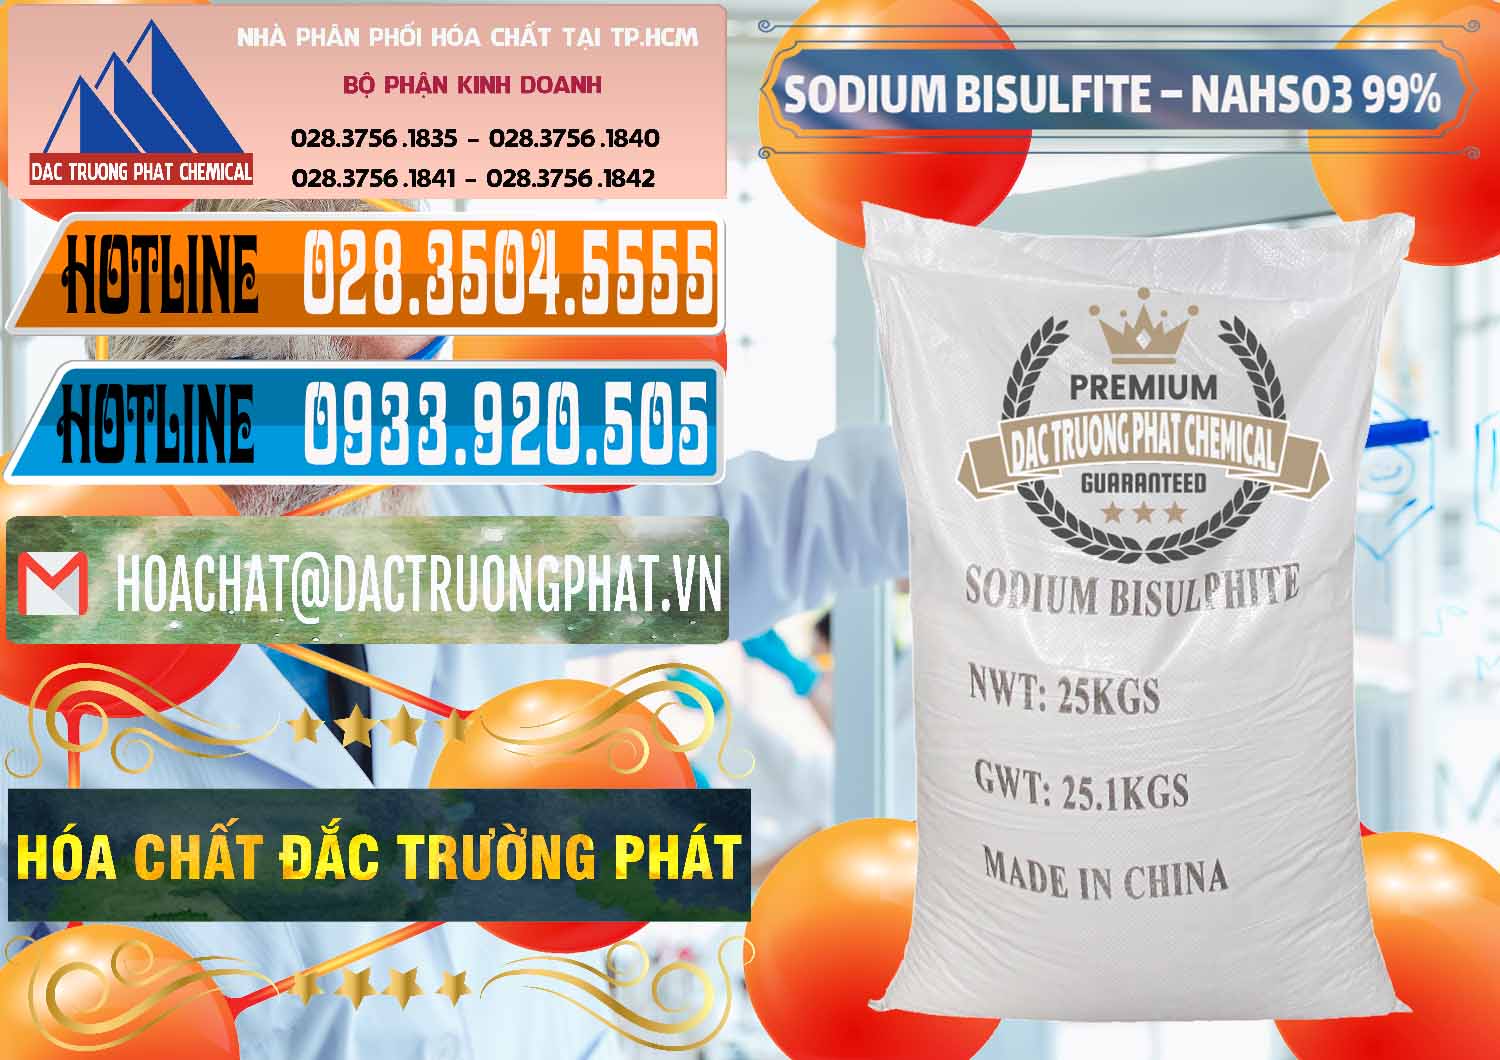 Nơi bán - cung cấp Sodium Bisulfite – NAHSO3 Trung Quốc China - 0140 - Cty chuyên cung cấp ( kinh doanh ) hóa chất tại TP.HCM - stmp.net